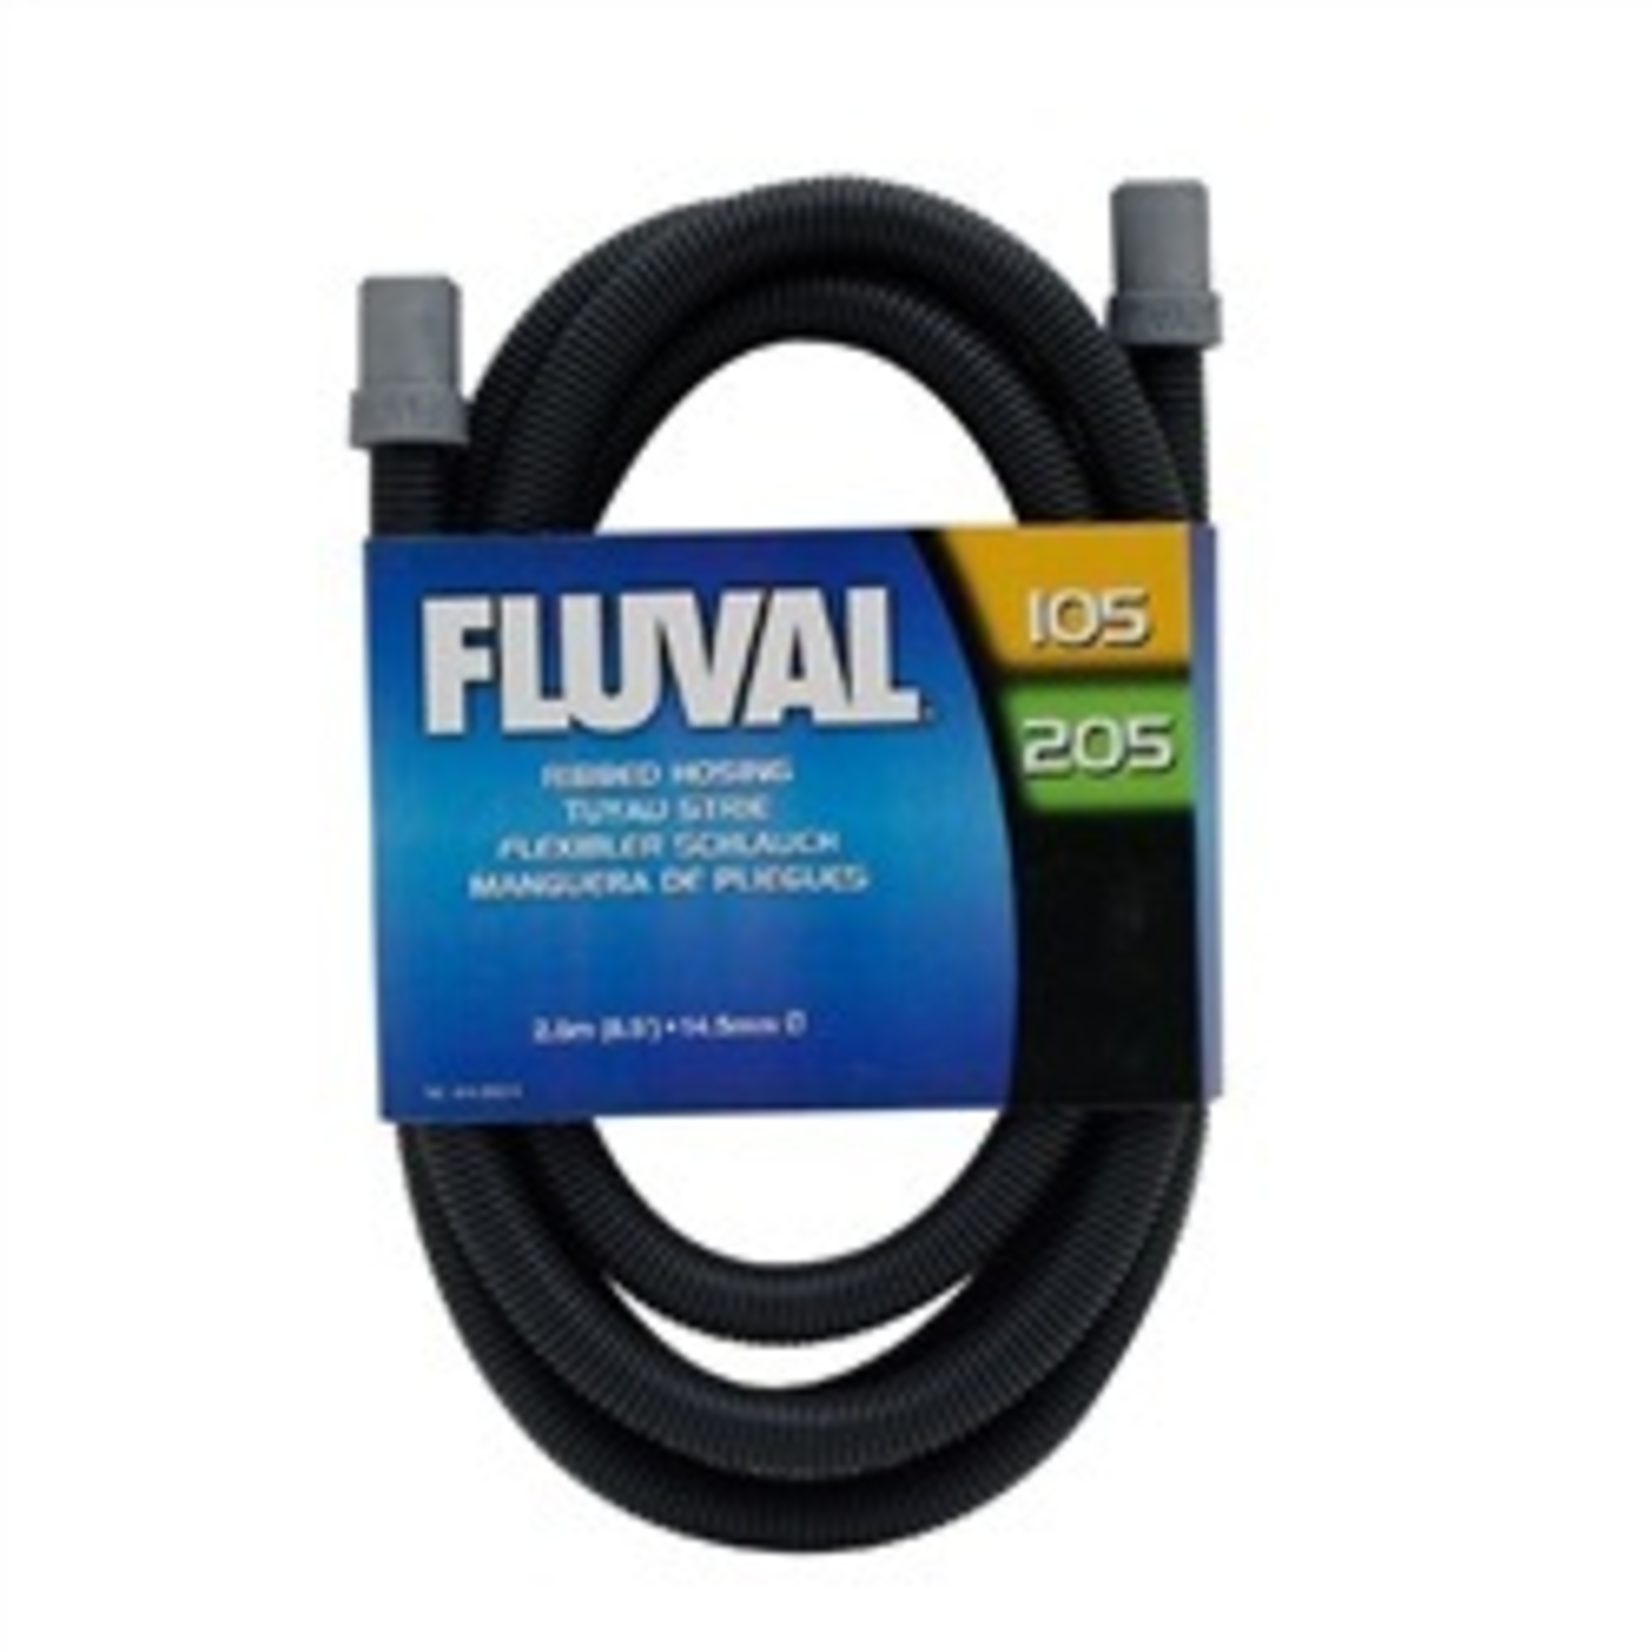 FLUVAL (W) A20014 - Fluval 104/5/6, 204/5/6 Ribbed Hosing